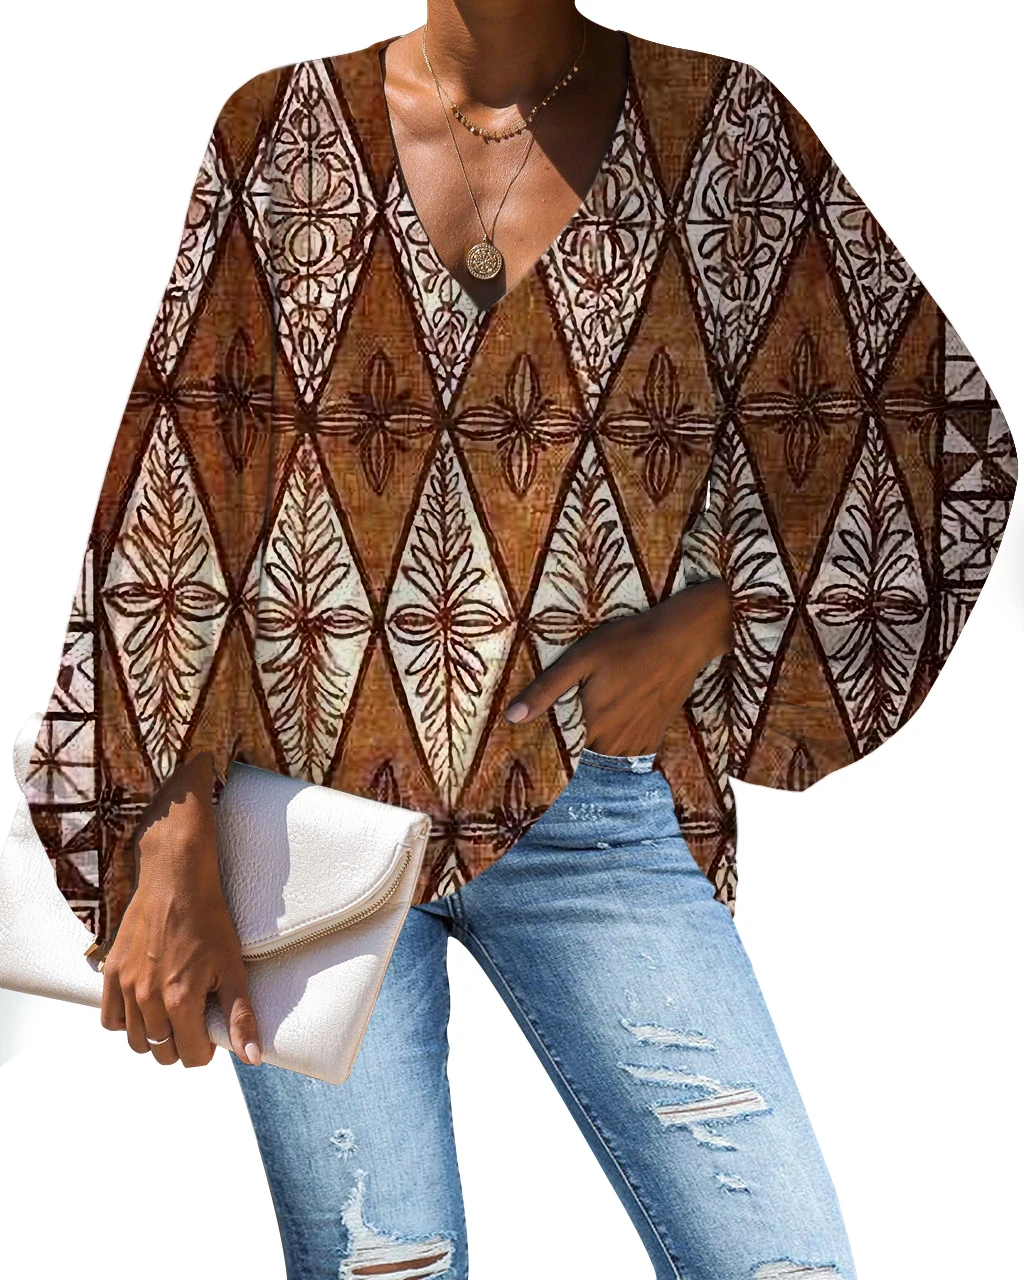 Оптовая продажа с фабрики, женские блузки с этническим принтом в стиле полинезийского Самоа, Модные свободные шифоновые женские блузки по индивидуальному заказу